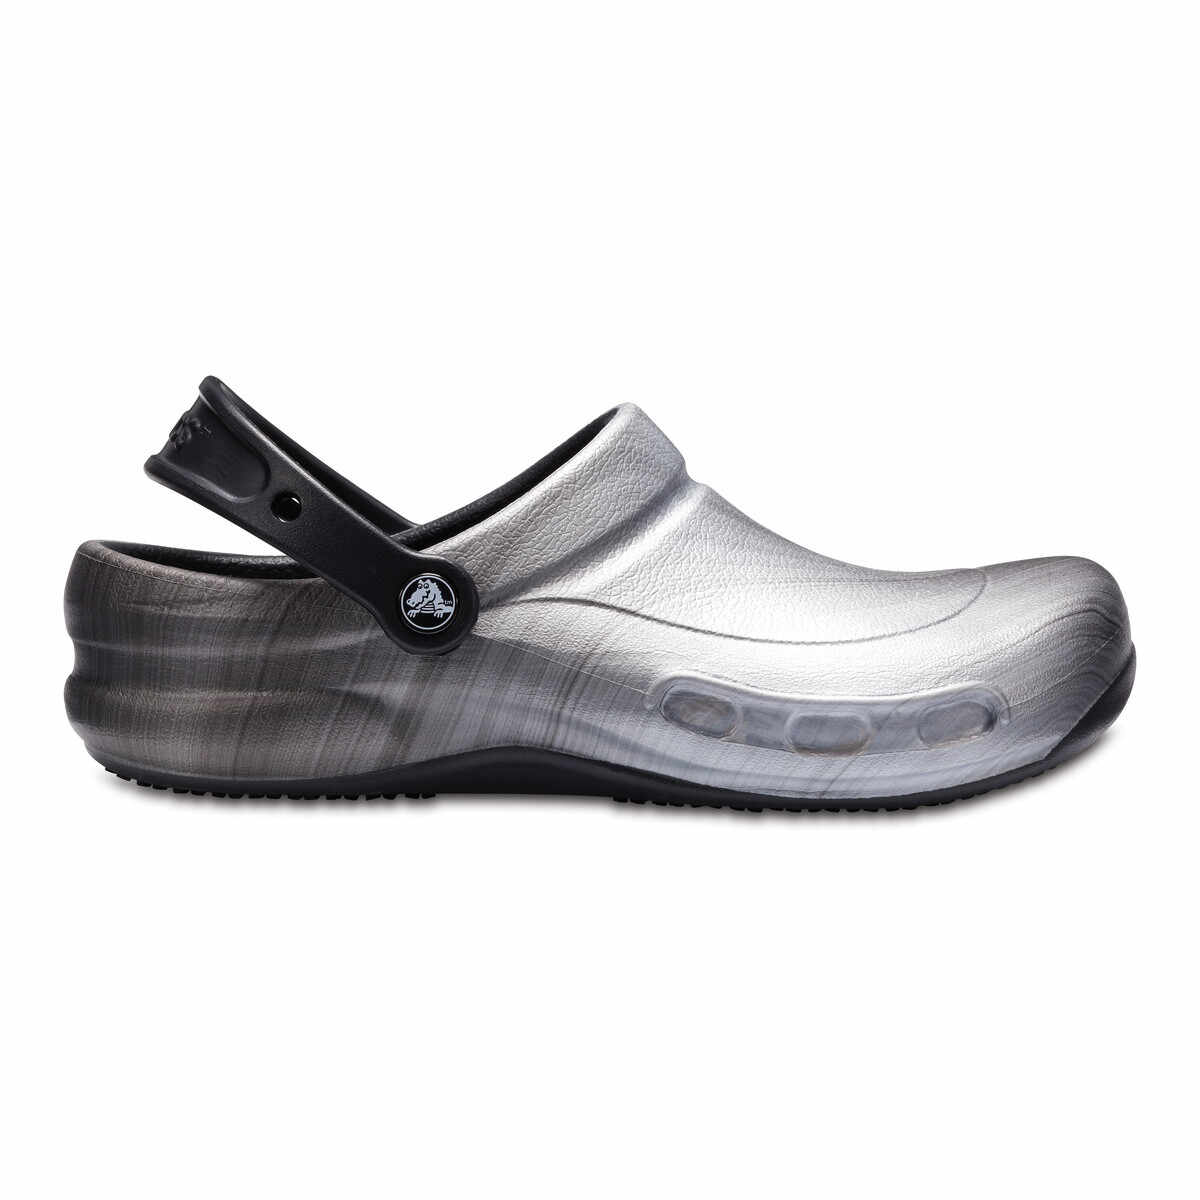 Saboti Crocs Bistro Graphic Clog Gri - Metallic Silver